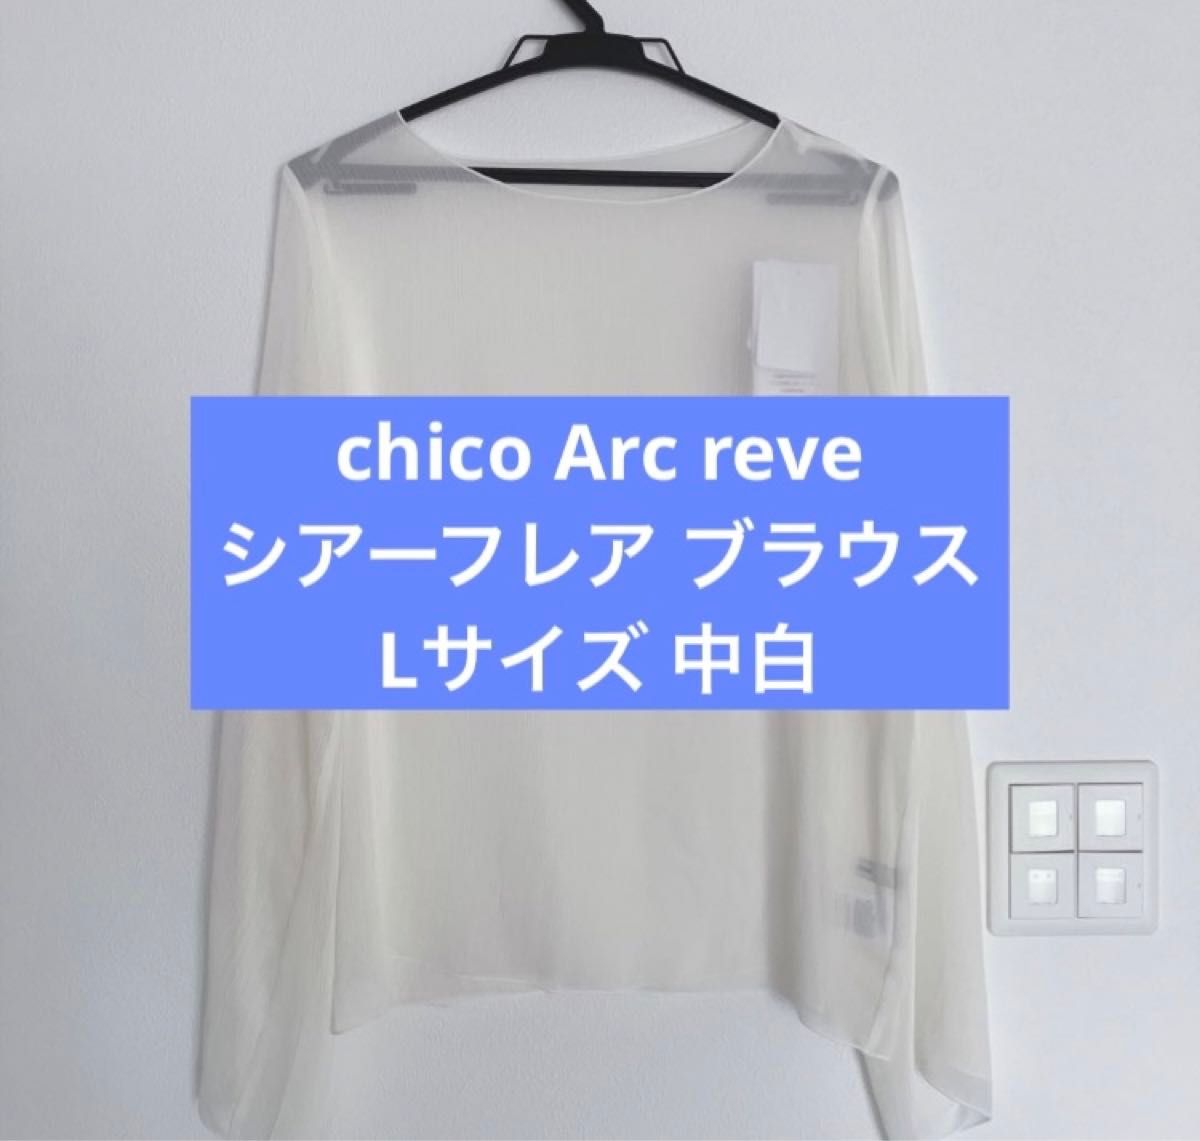 新品未使用 しまむら chico Arc reve フレア ブラウス Linoluce ホワイト Lサイズ 完売 人気商品